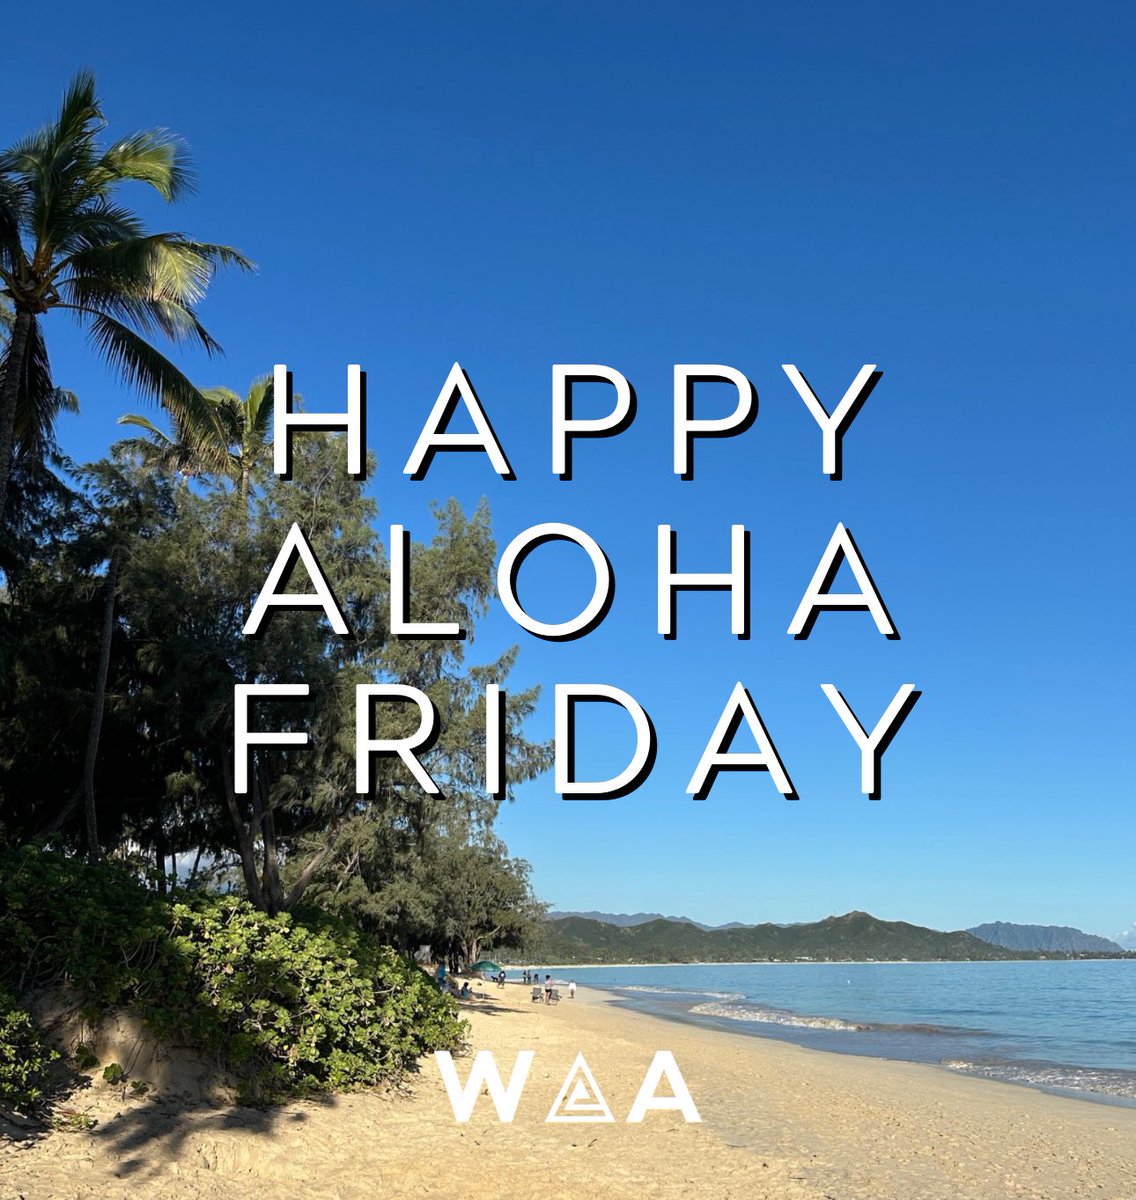 Happy Aloha Friday WARRIOR NATION! #BRADDAHHOOD #HawaiiFB #GoBows